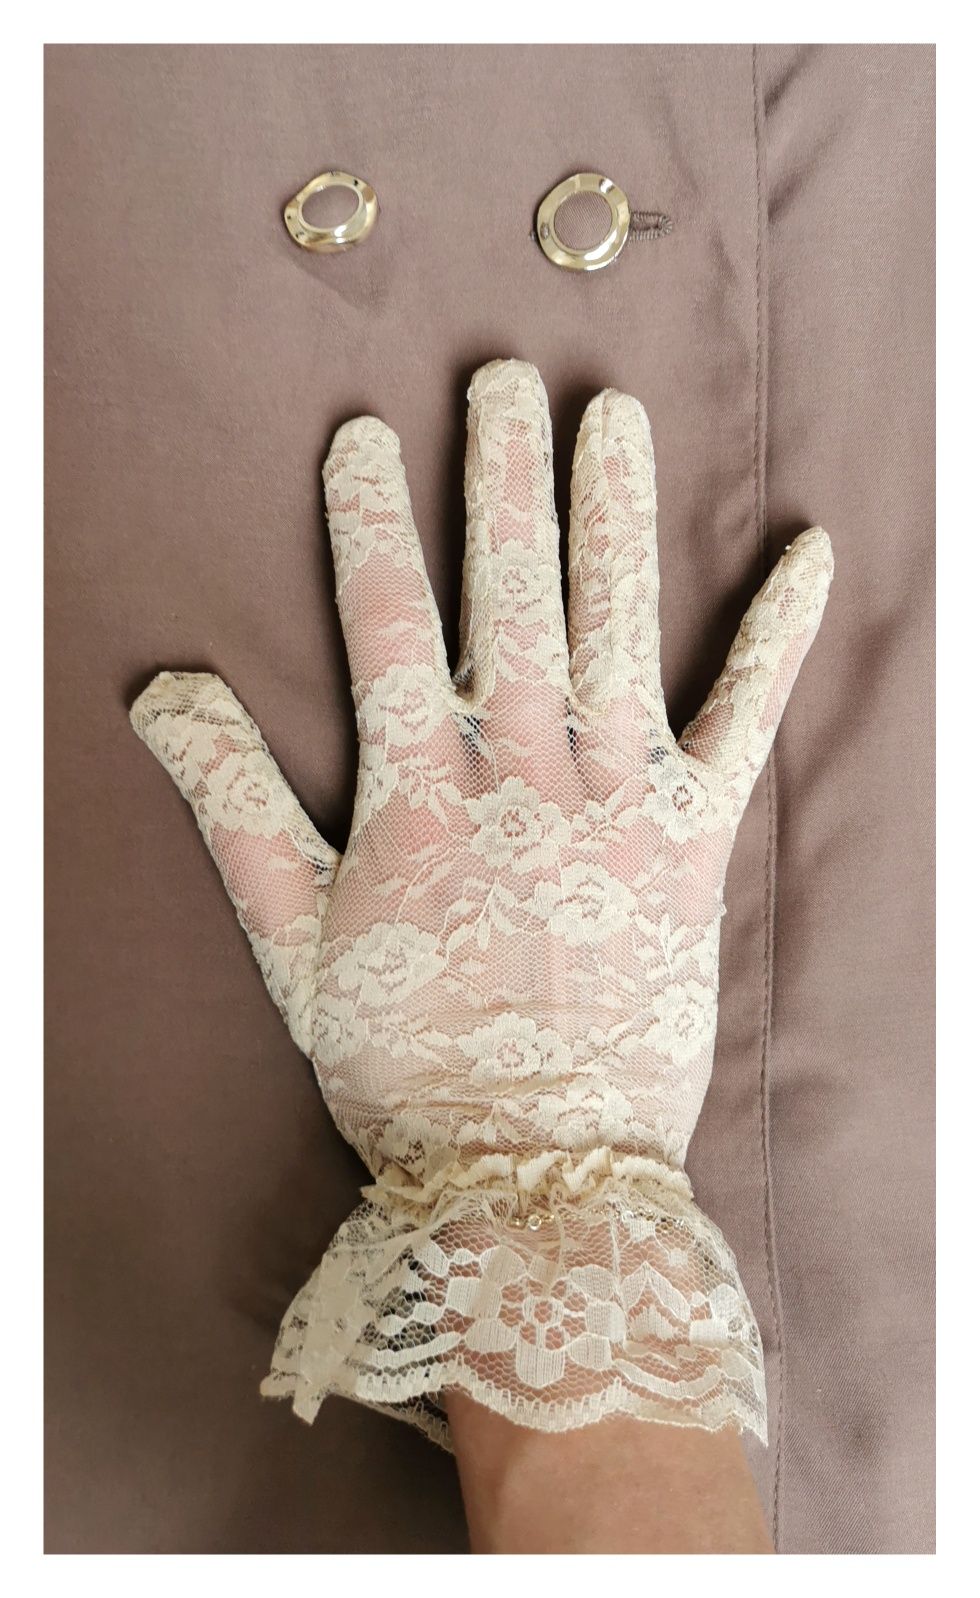 Urocze rękawiczki z koronki (rozm. uniwersalny) #romantyczne #vintage